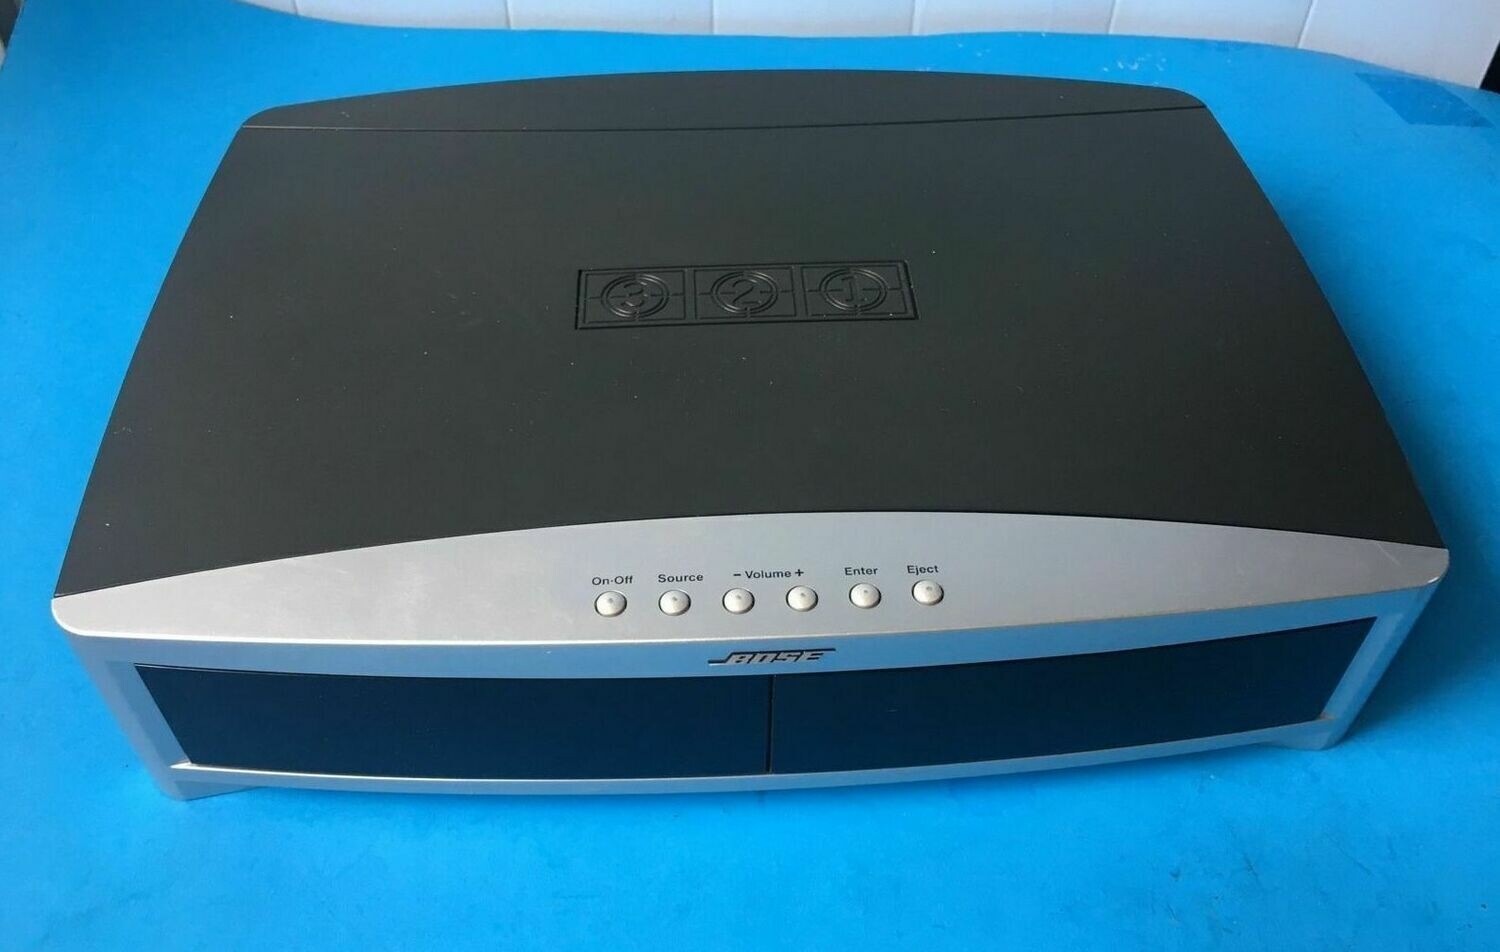 Bose AV-321 Series II Media Center Home Theater DVD Player 3-2-1